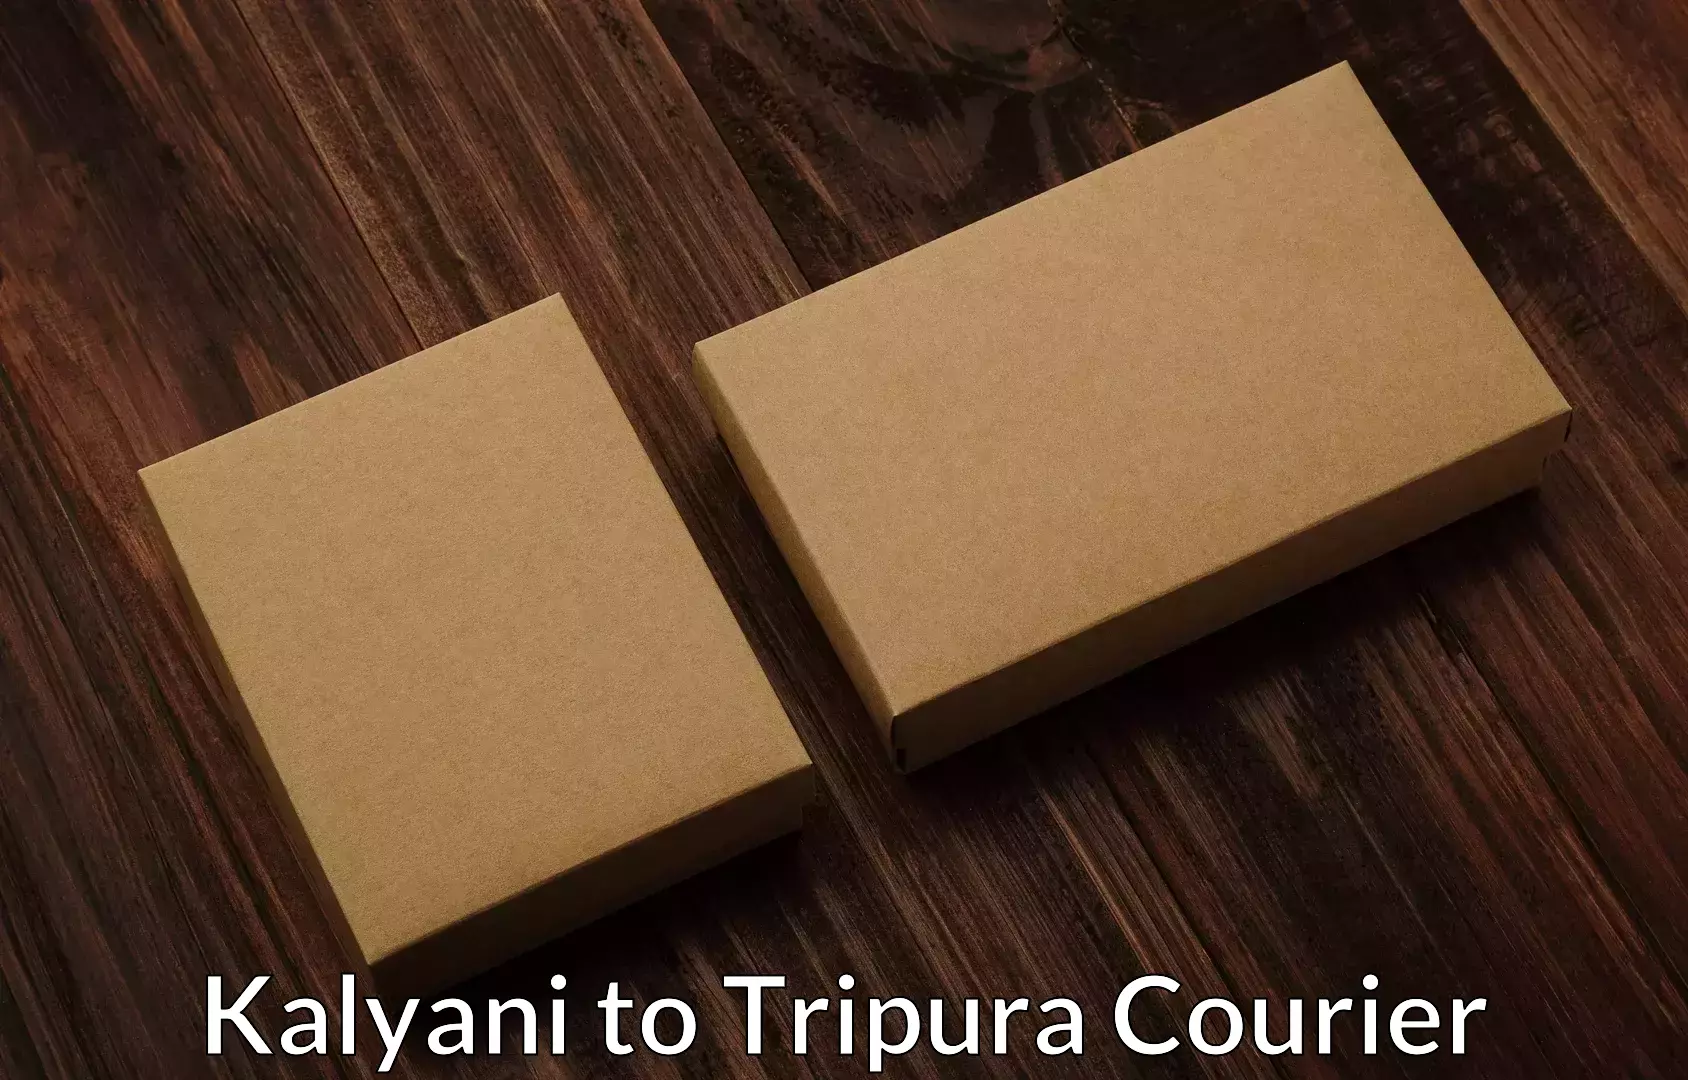 Professional packing and transport Kalyani to Tripura